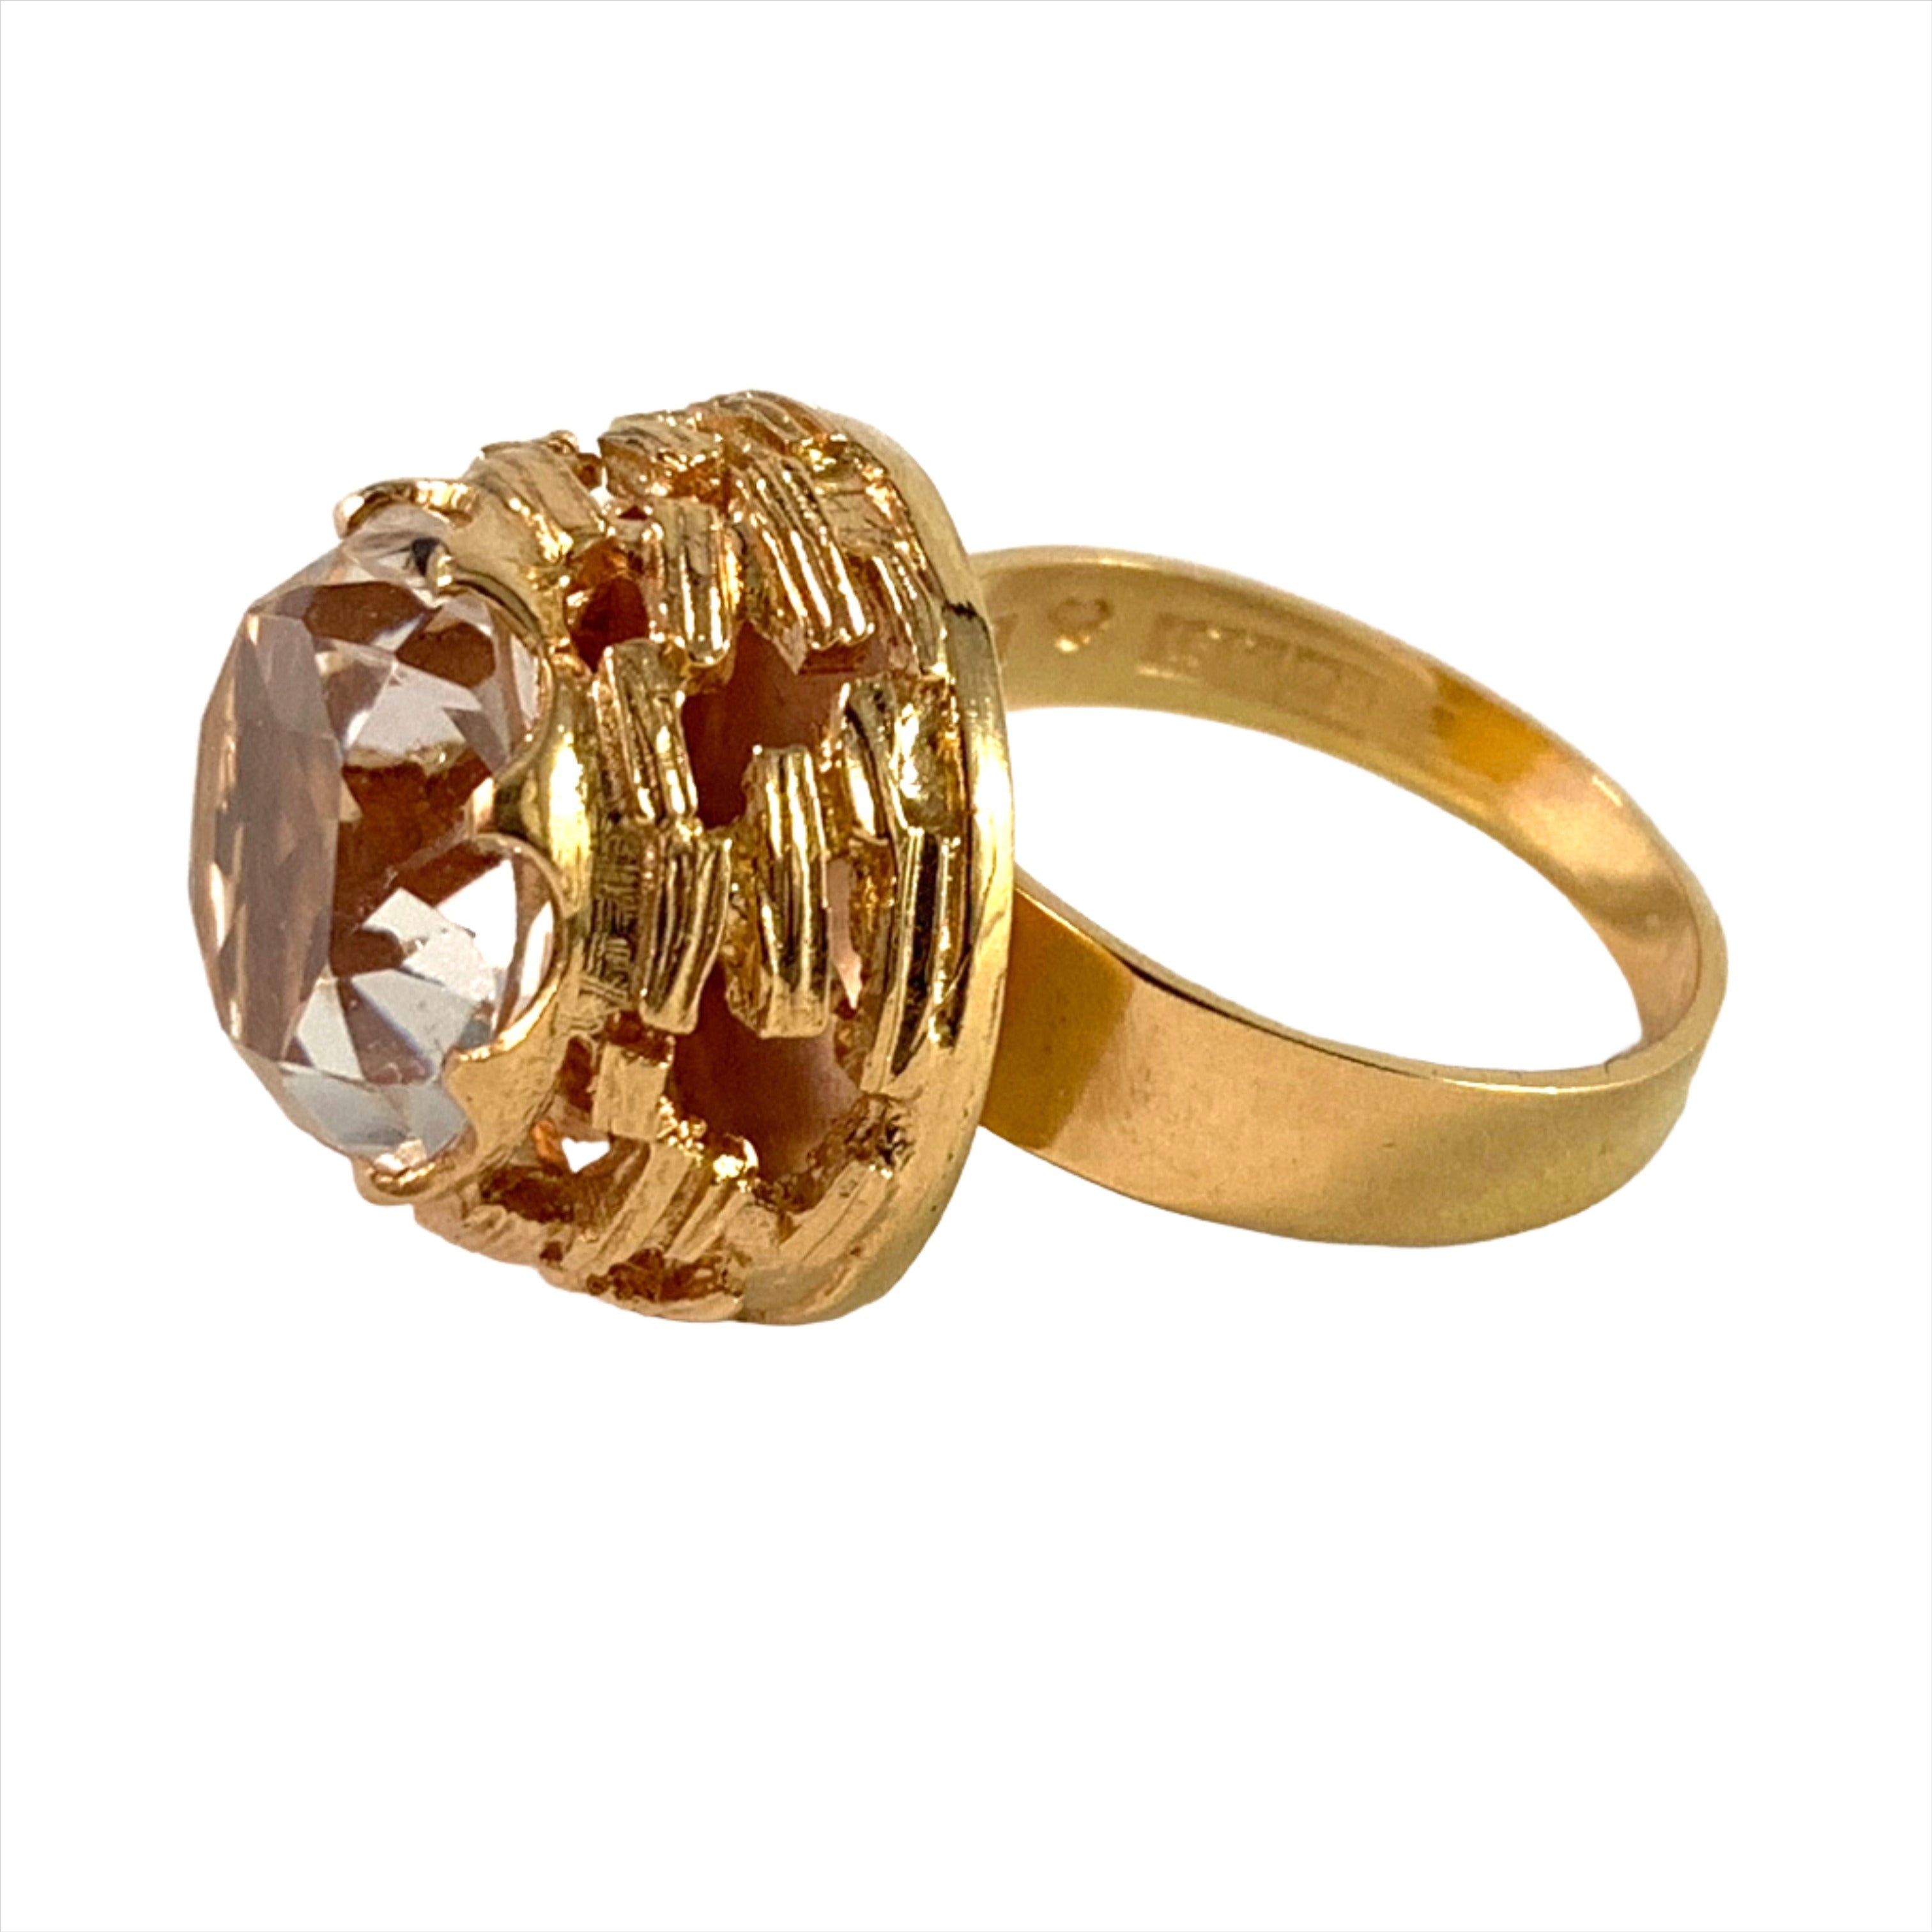 Bengt Hallberg 1974 Modernist Bold 18k Gold Rock Crystal Ring